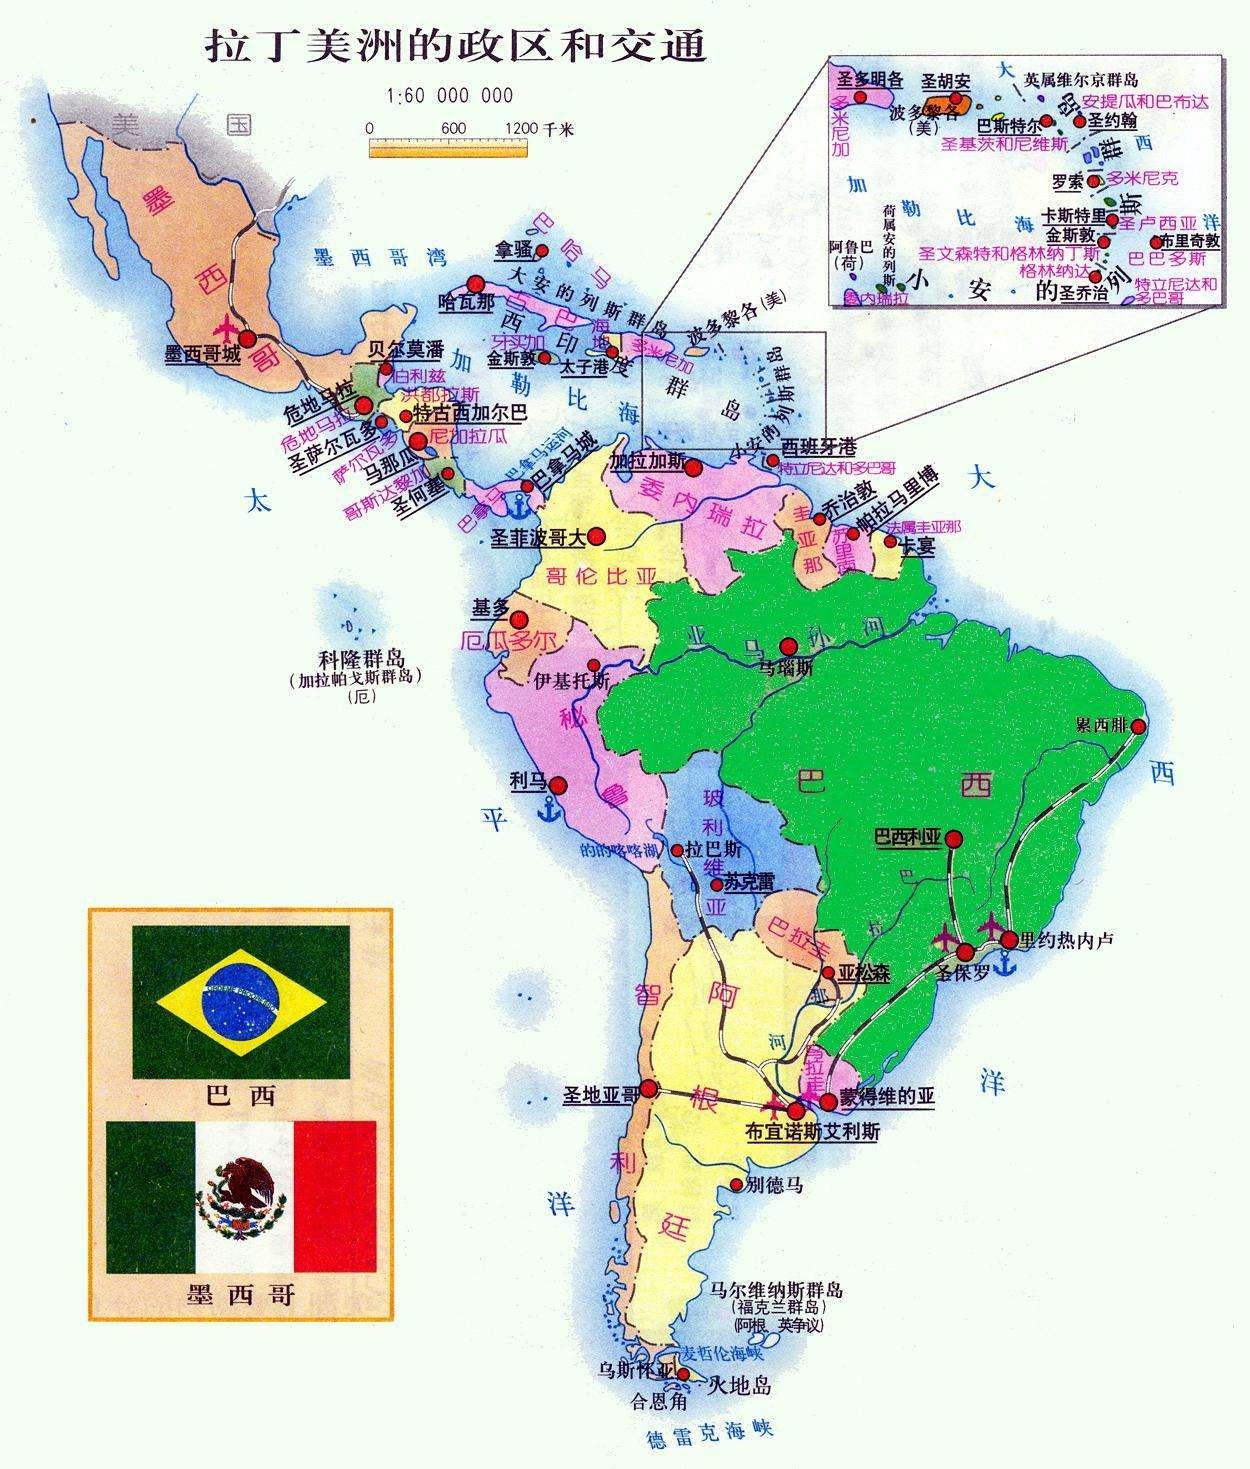 美洲的区域划分：北美、北美洲、中美洲、南美洲和拉丁美洲的关系